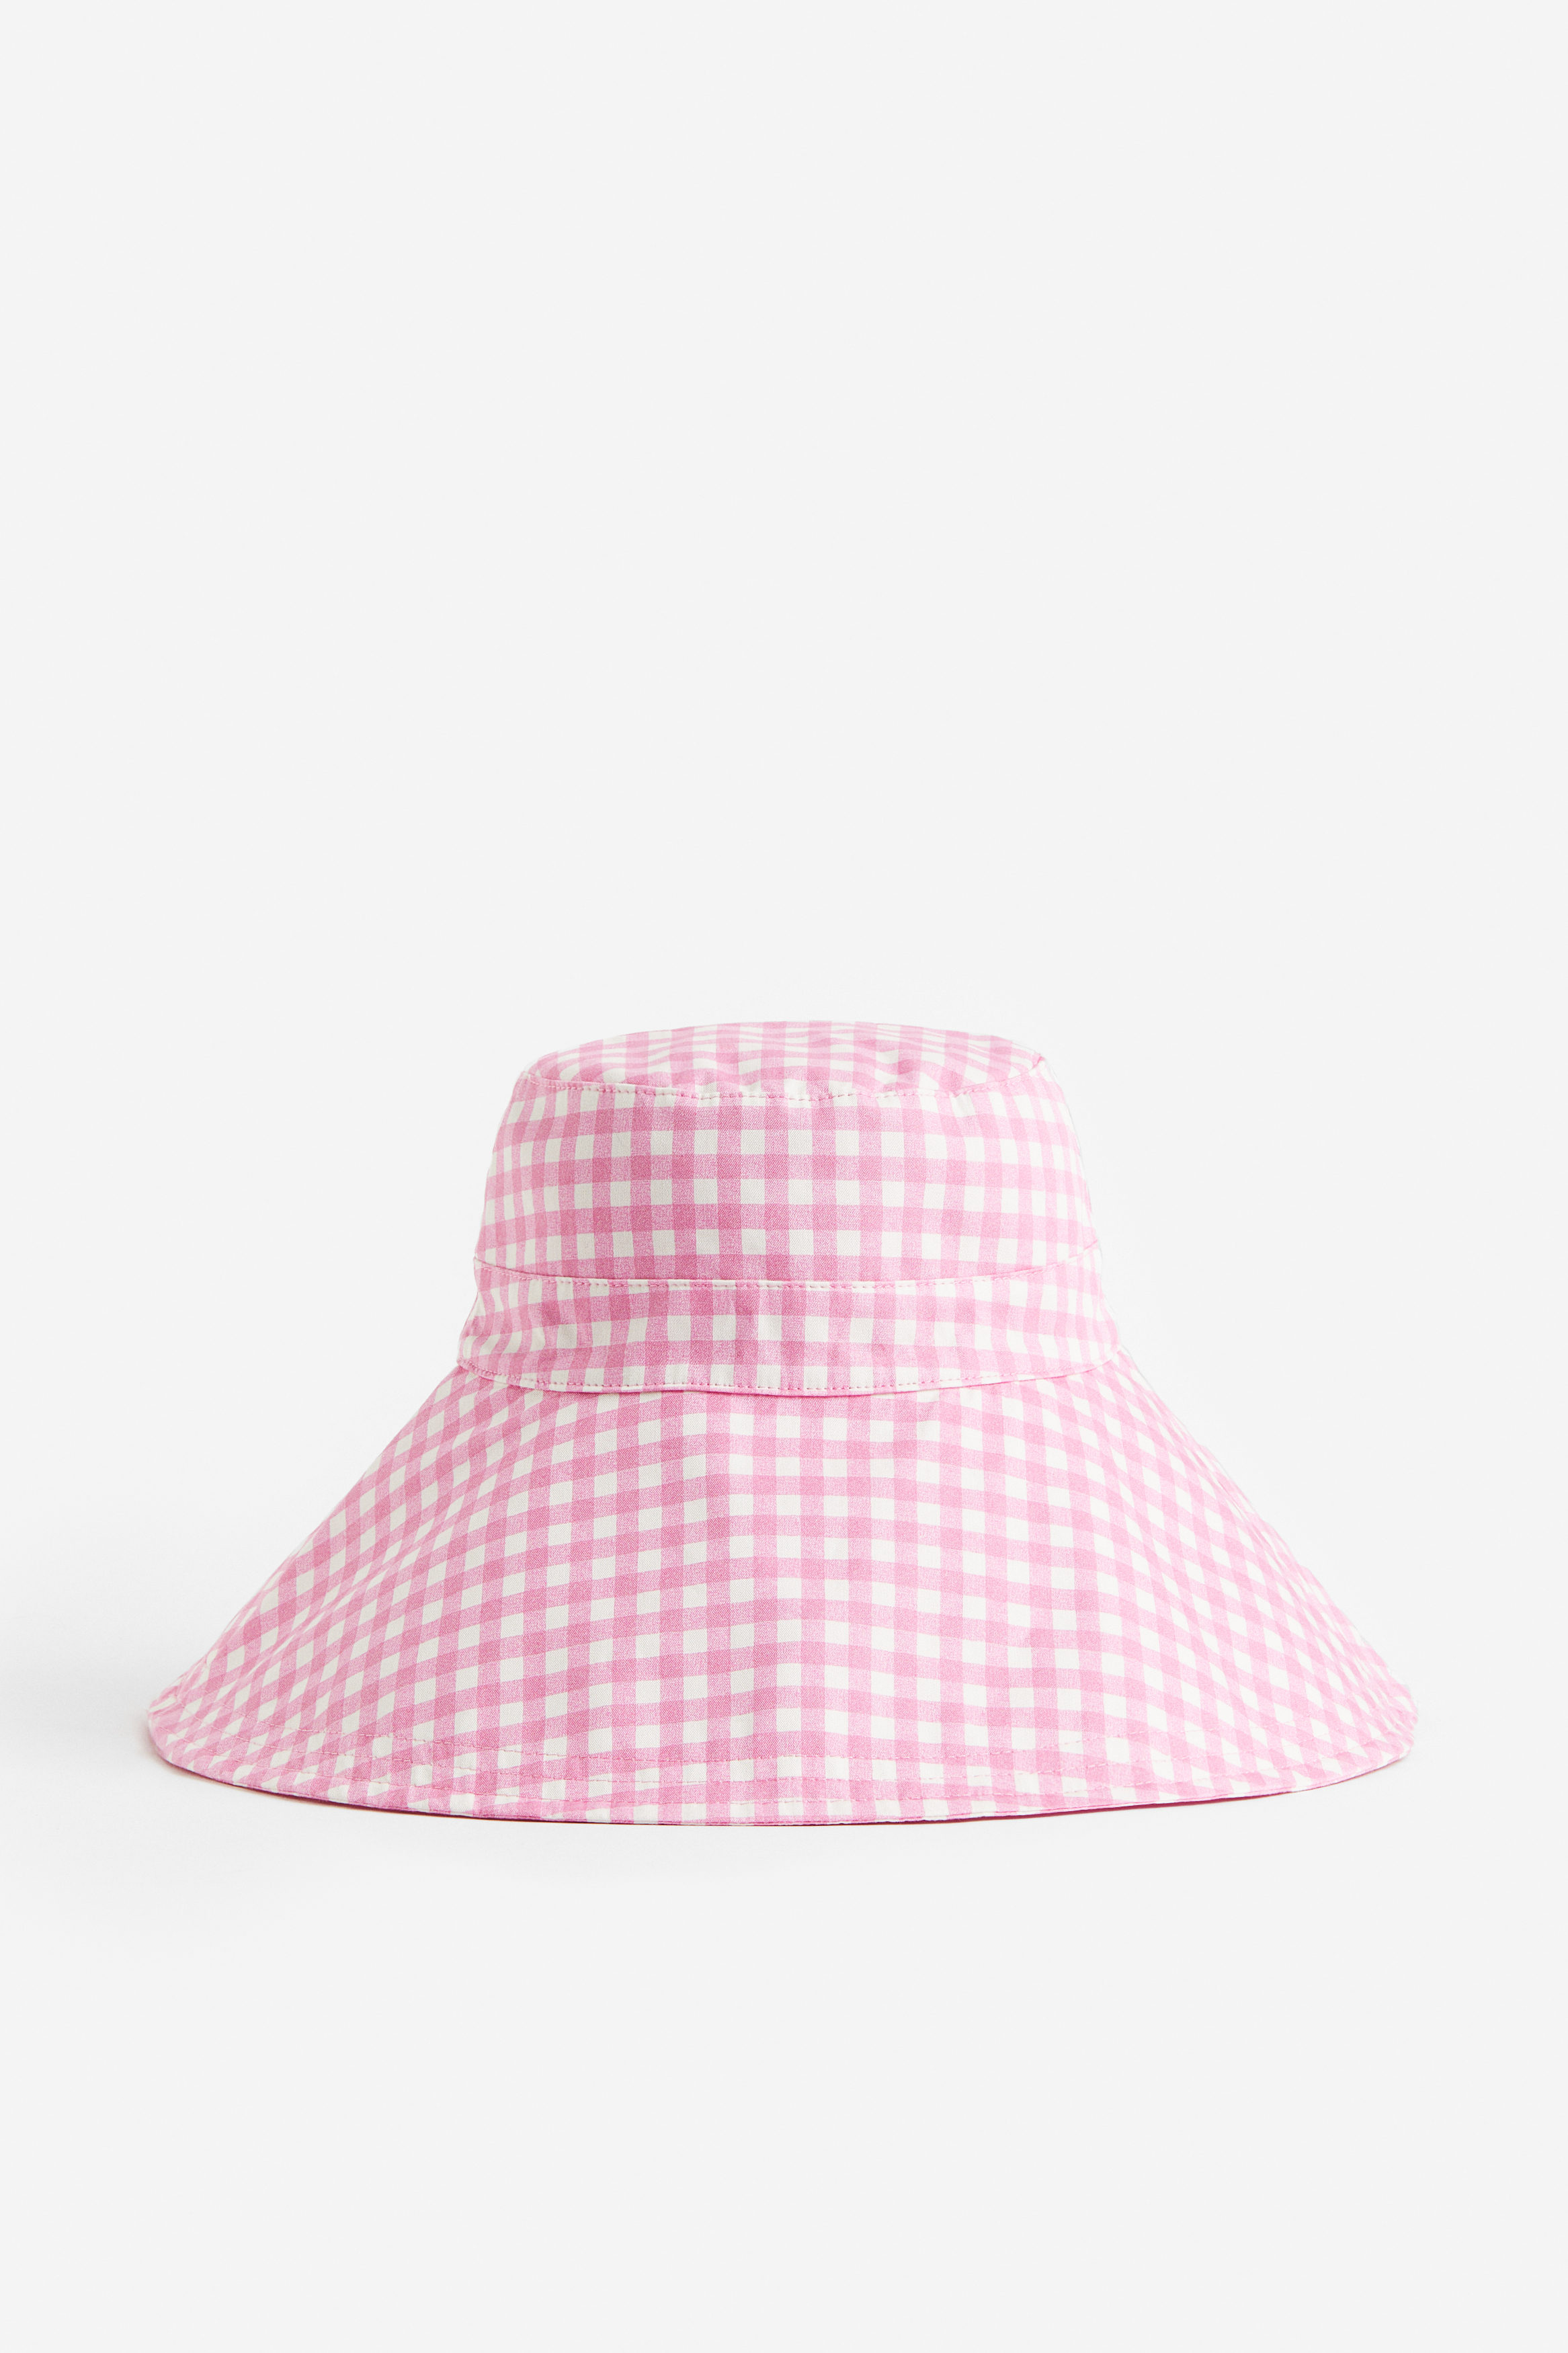 HM - Her er H&M Bøllehat I Bomuld Rosa/ternet, Hatte. Farve: Pink/checked størrelse | Coso.dk